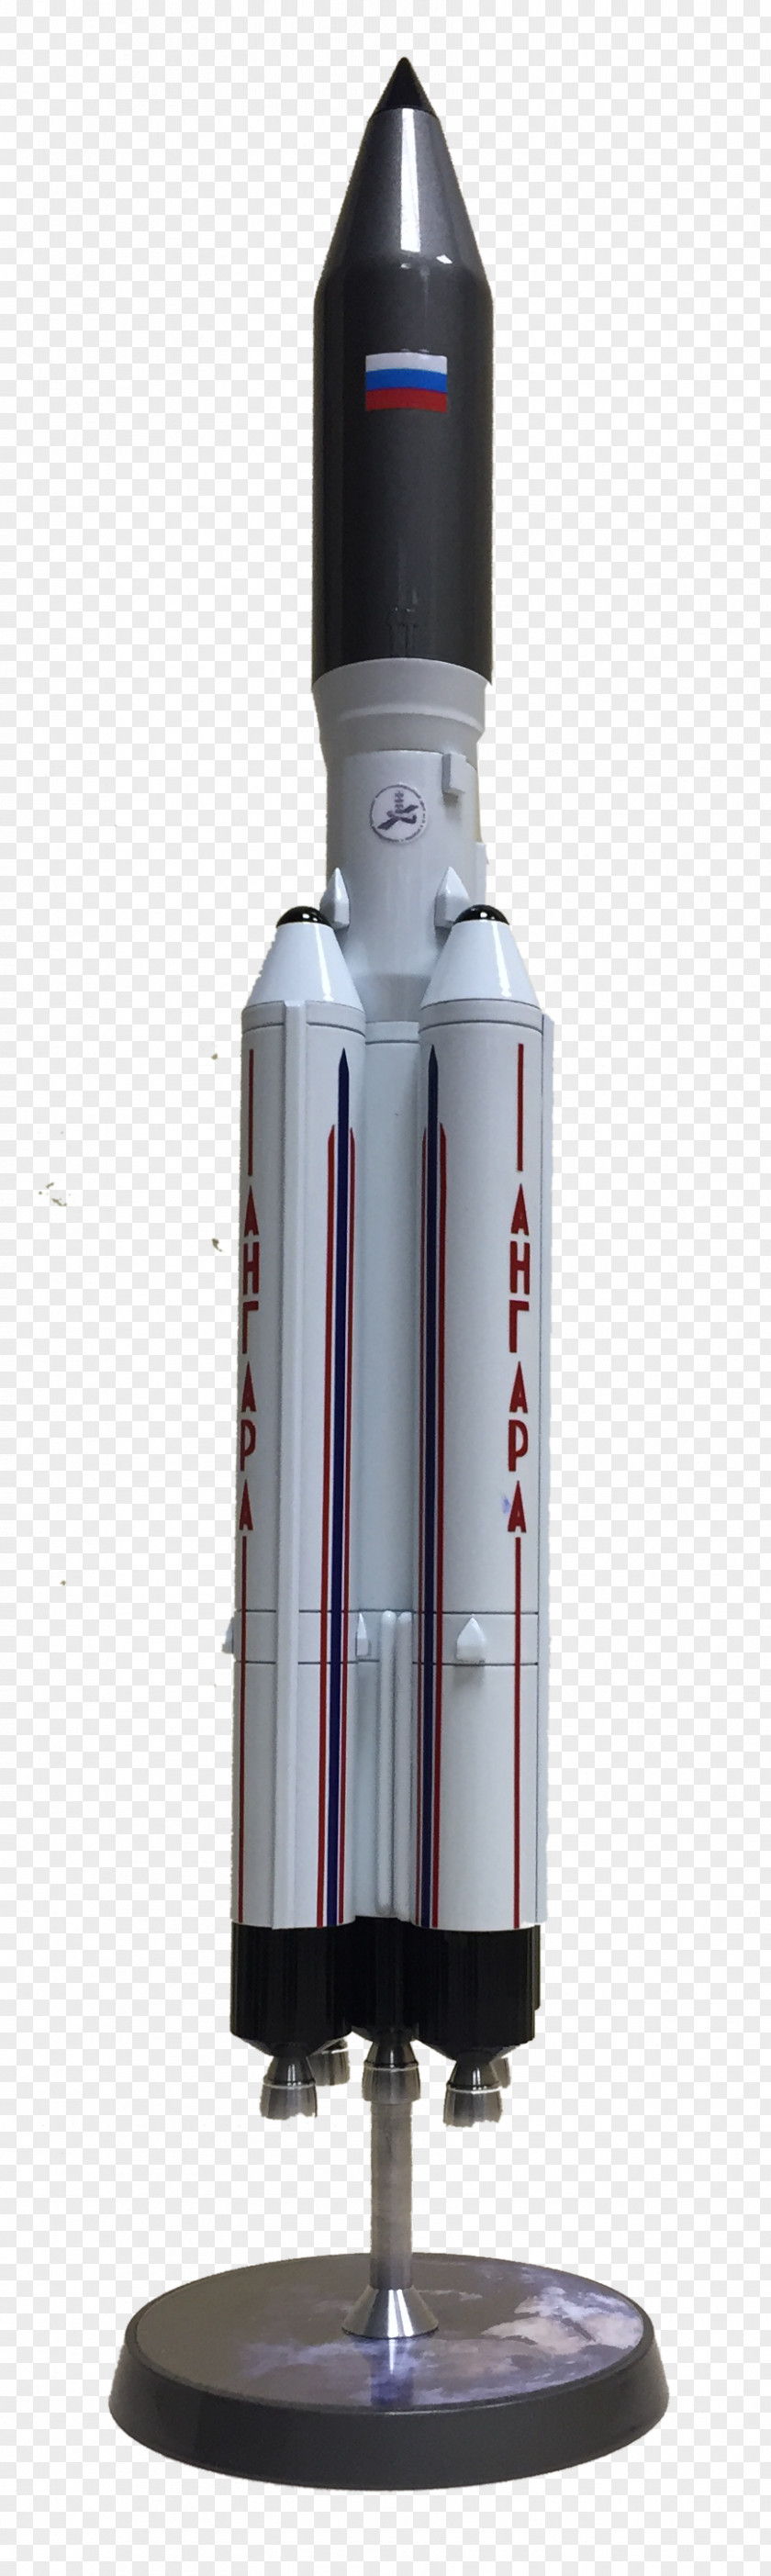 Rockets Rocket PNG